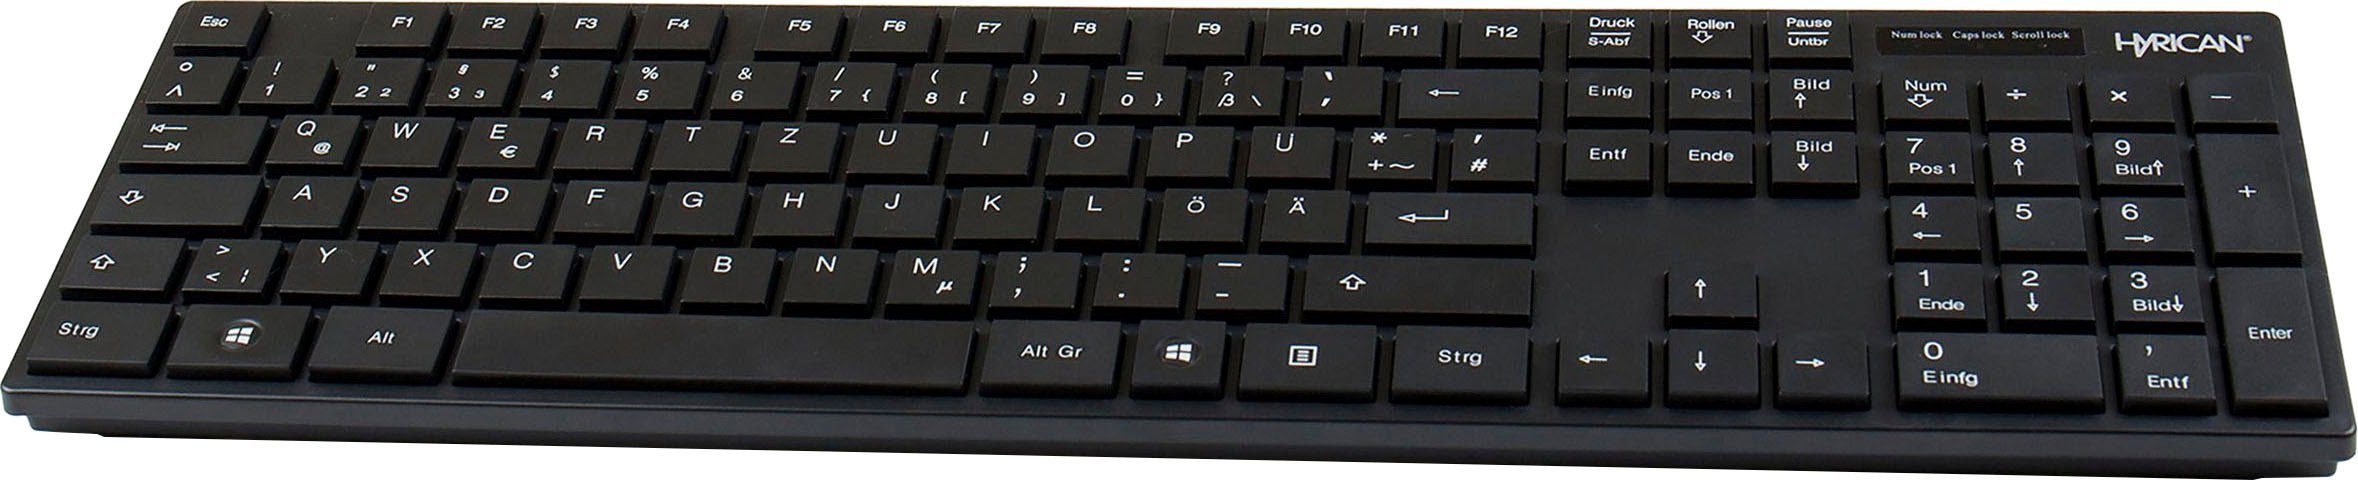 Hyrican ST-SKB698 (kabelgebunden, office Tastatur, Plug & Play) USB-Tastatur